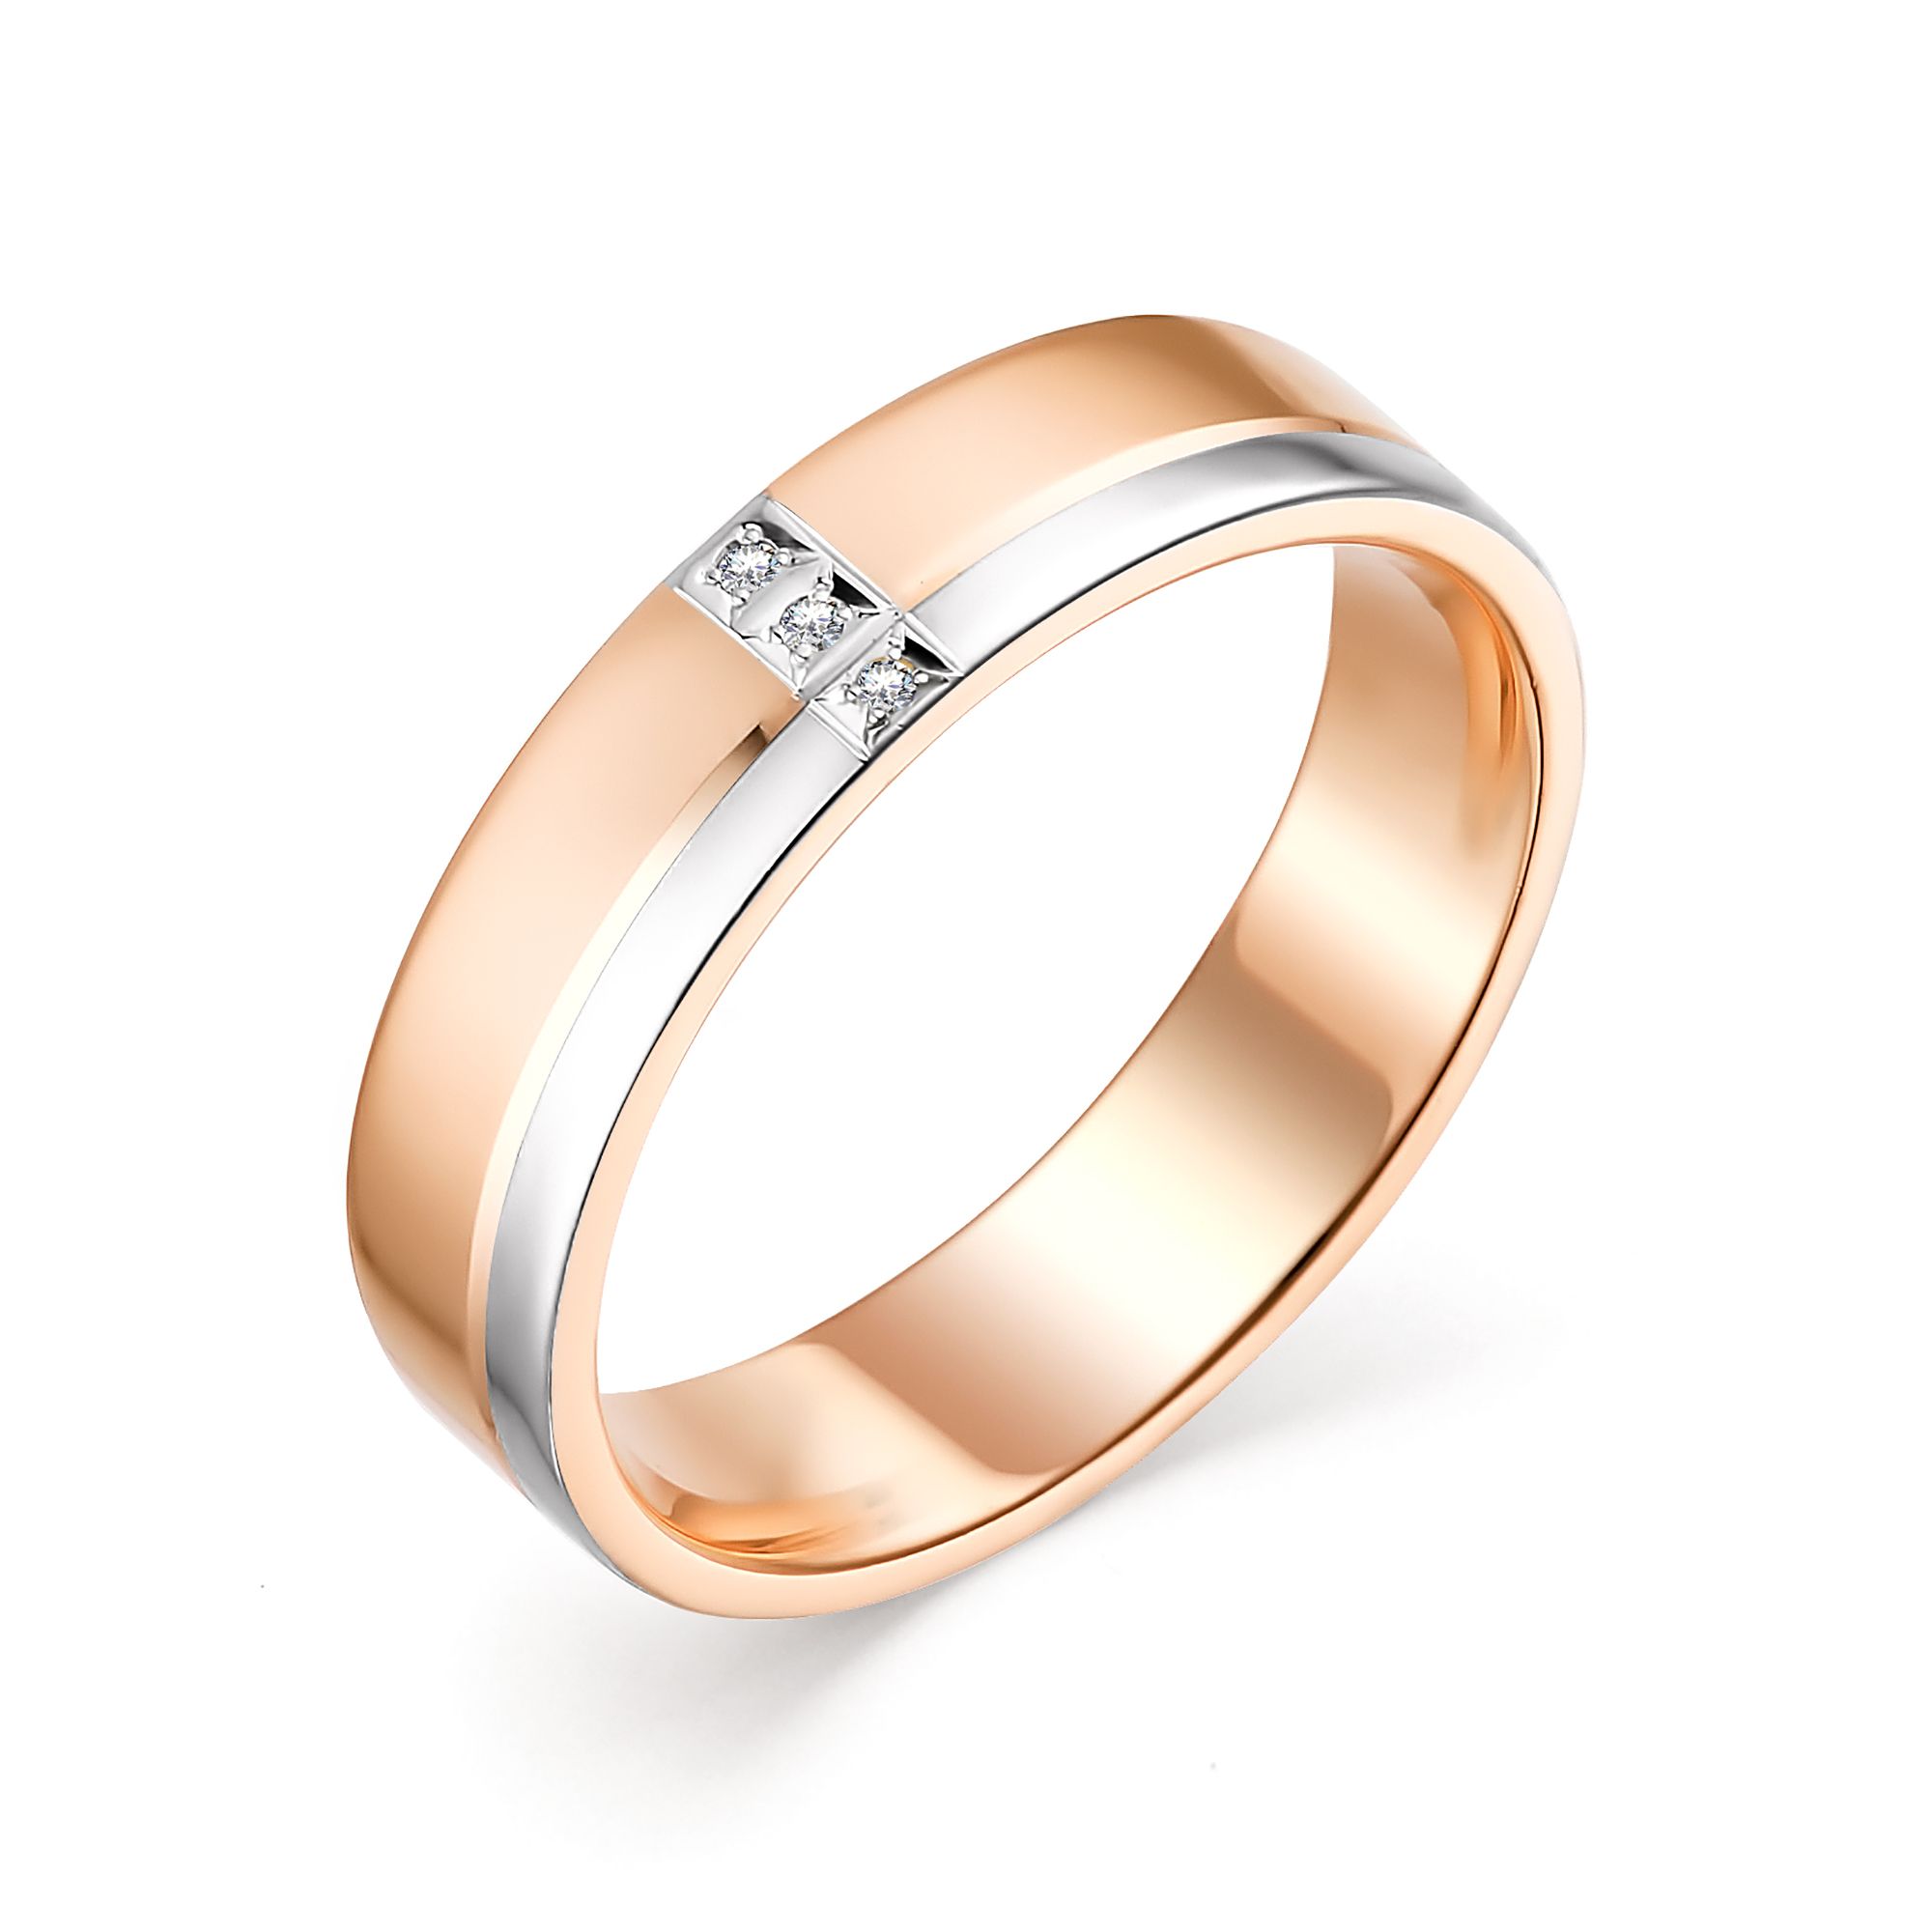 Мужское золотое кольцо Алькор 12781-100 c бриллиантом